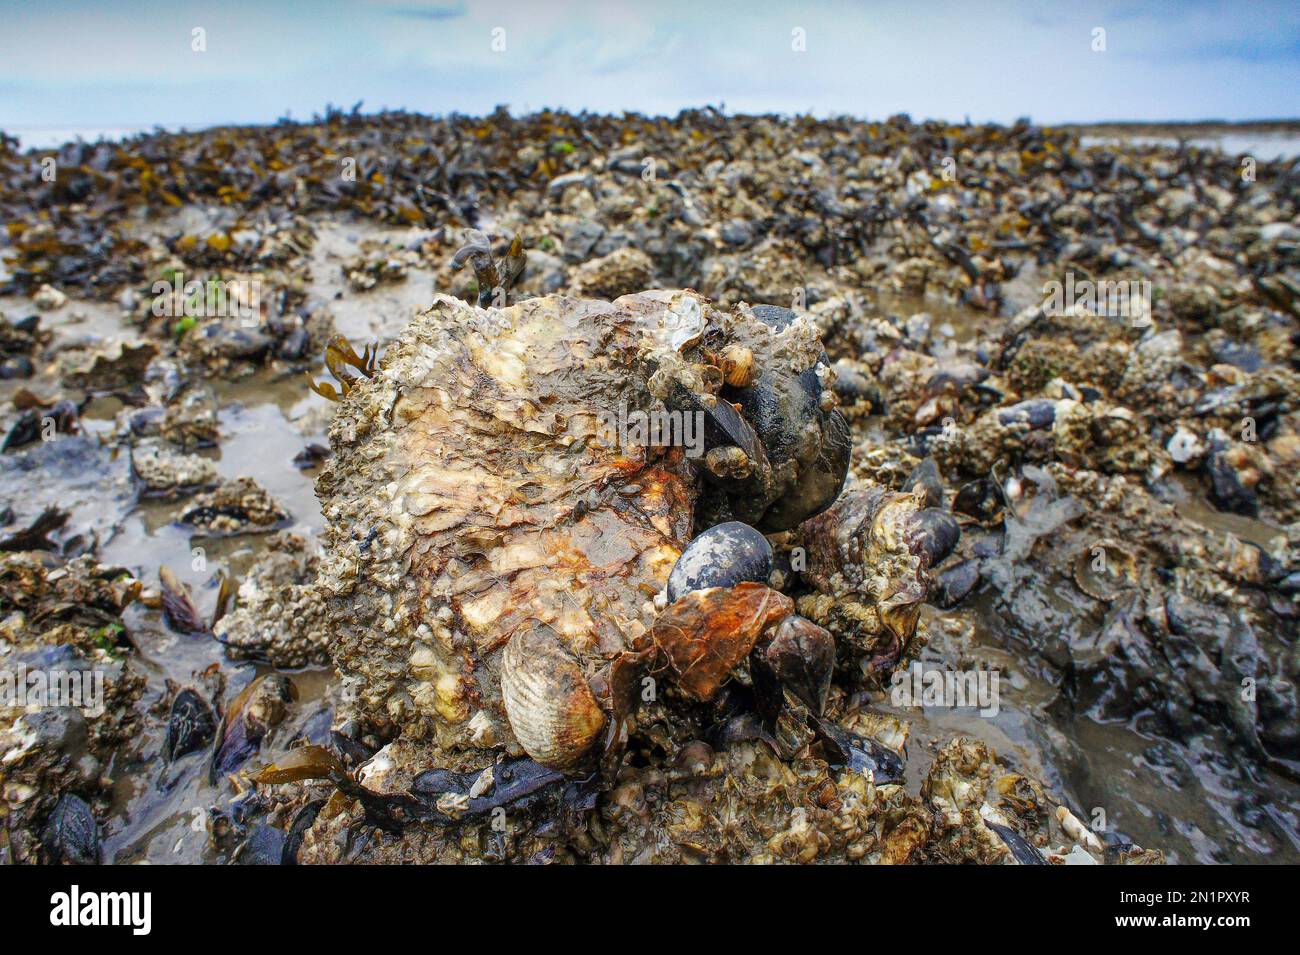 Niederlande, japanische Auster oder Miyagi Auster (Crassostrea gigas) im Wattenmeer im Norden Hollands. Stockfoto